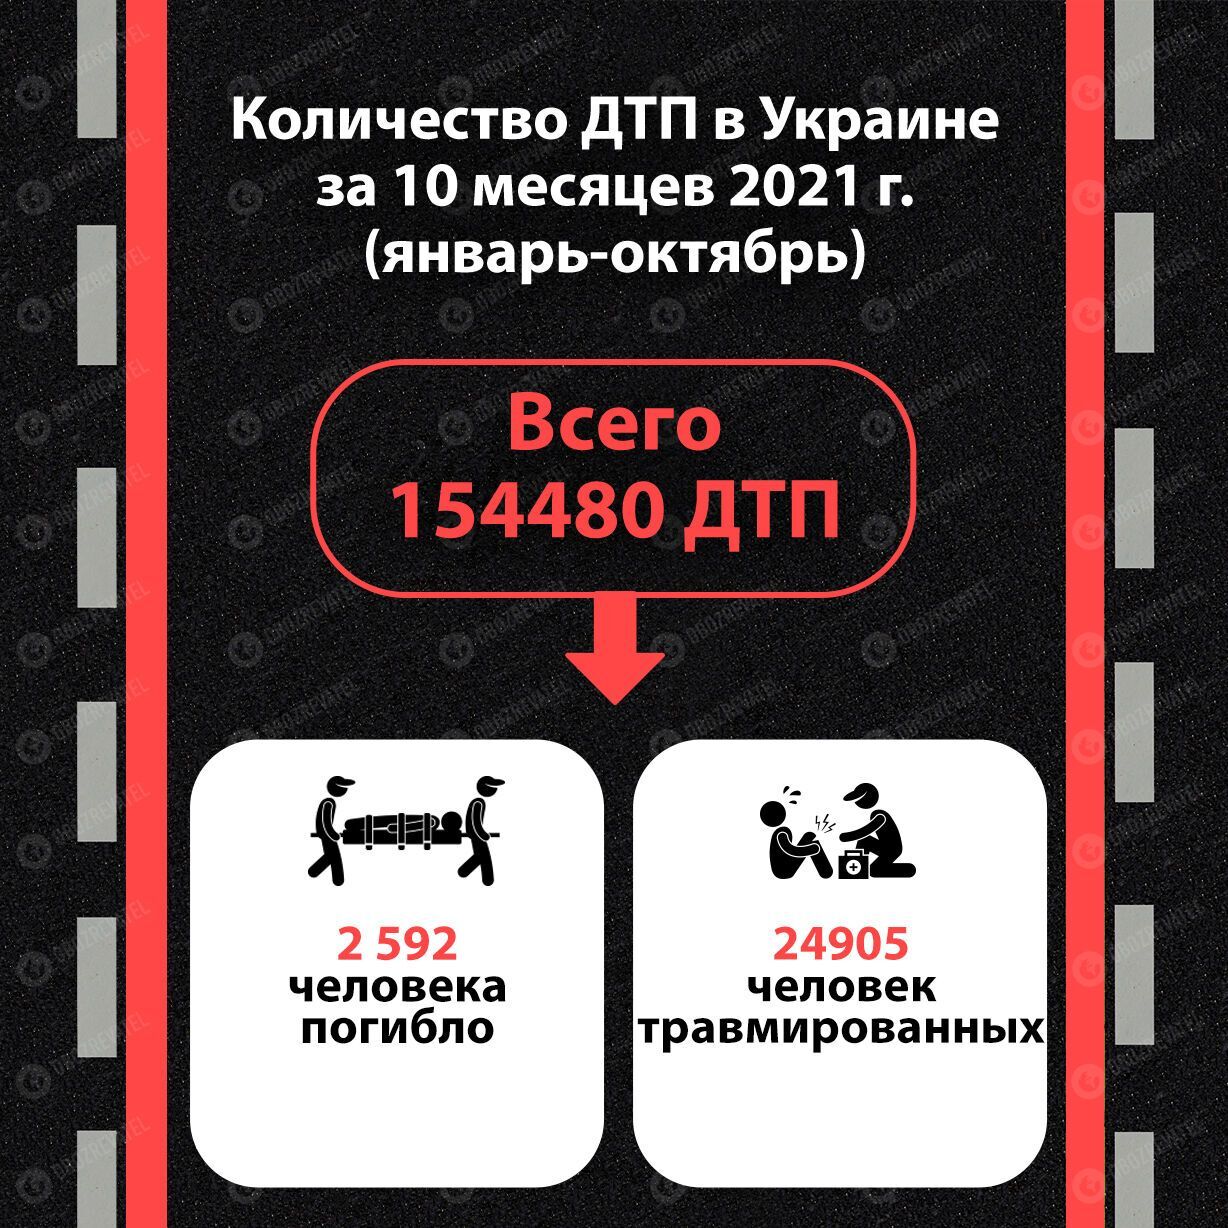 Статистика ДТП в Украине за январь-октябрь